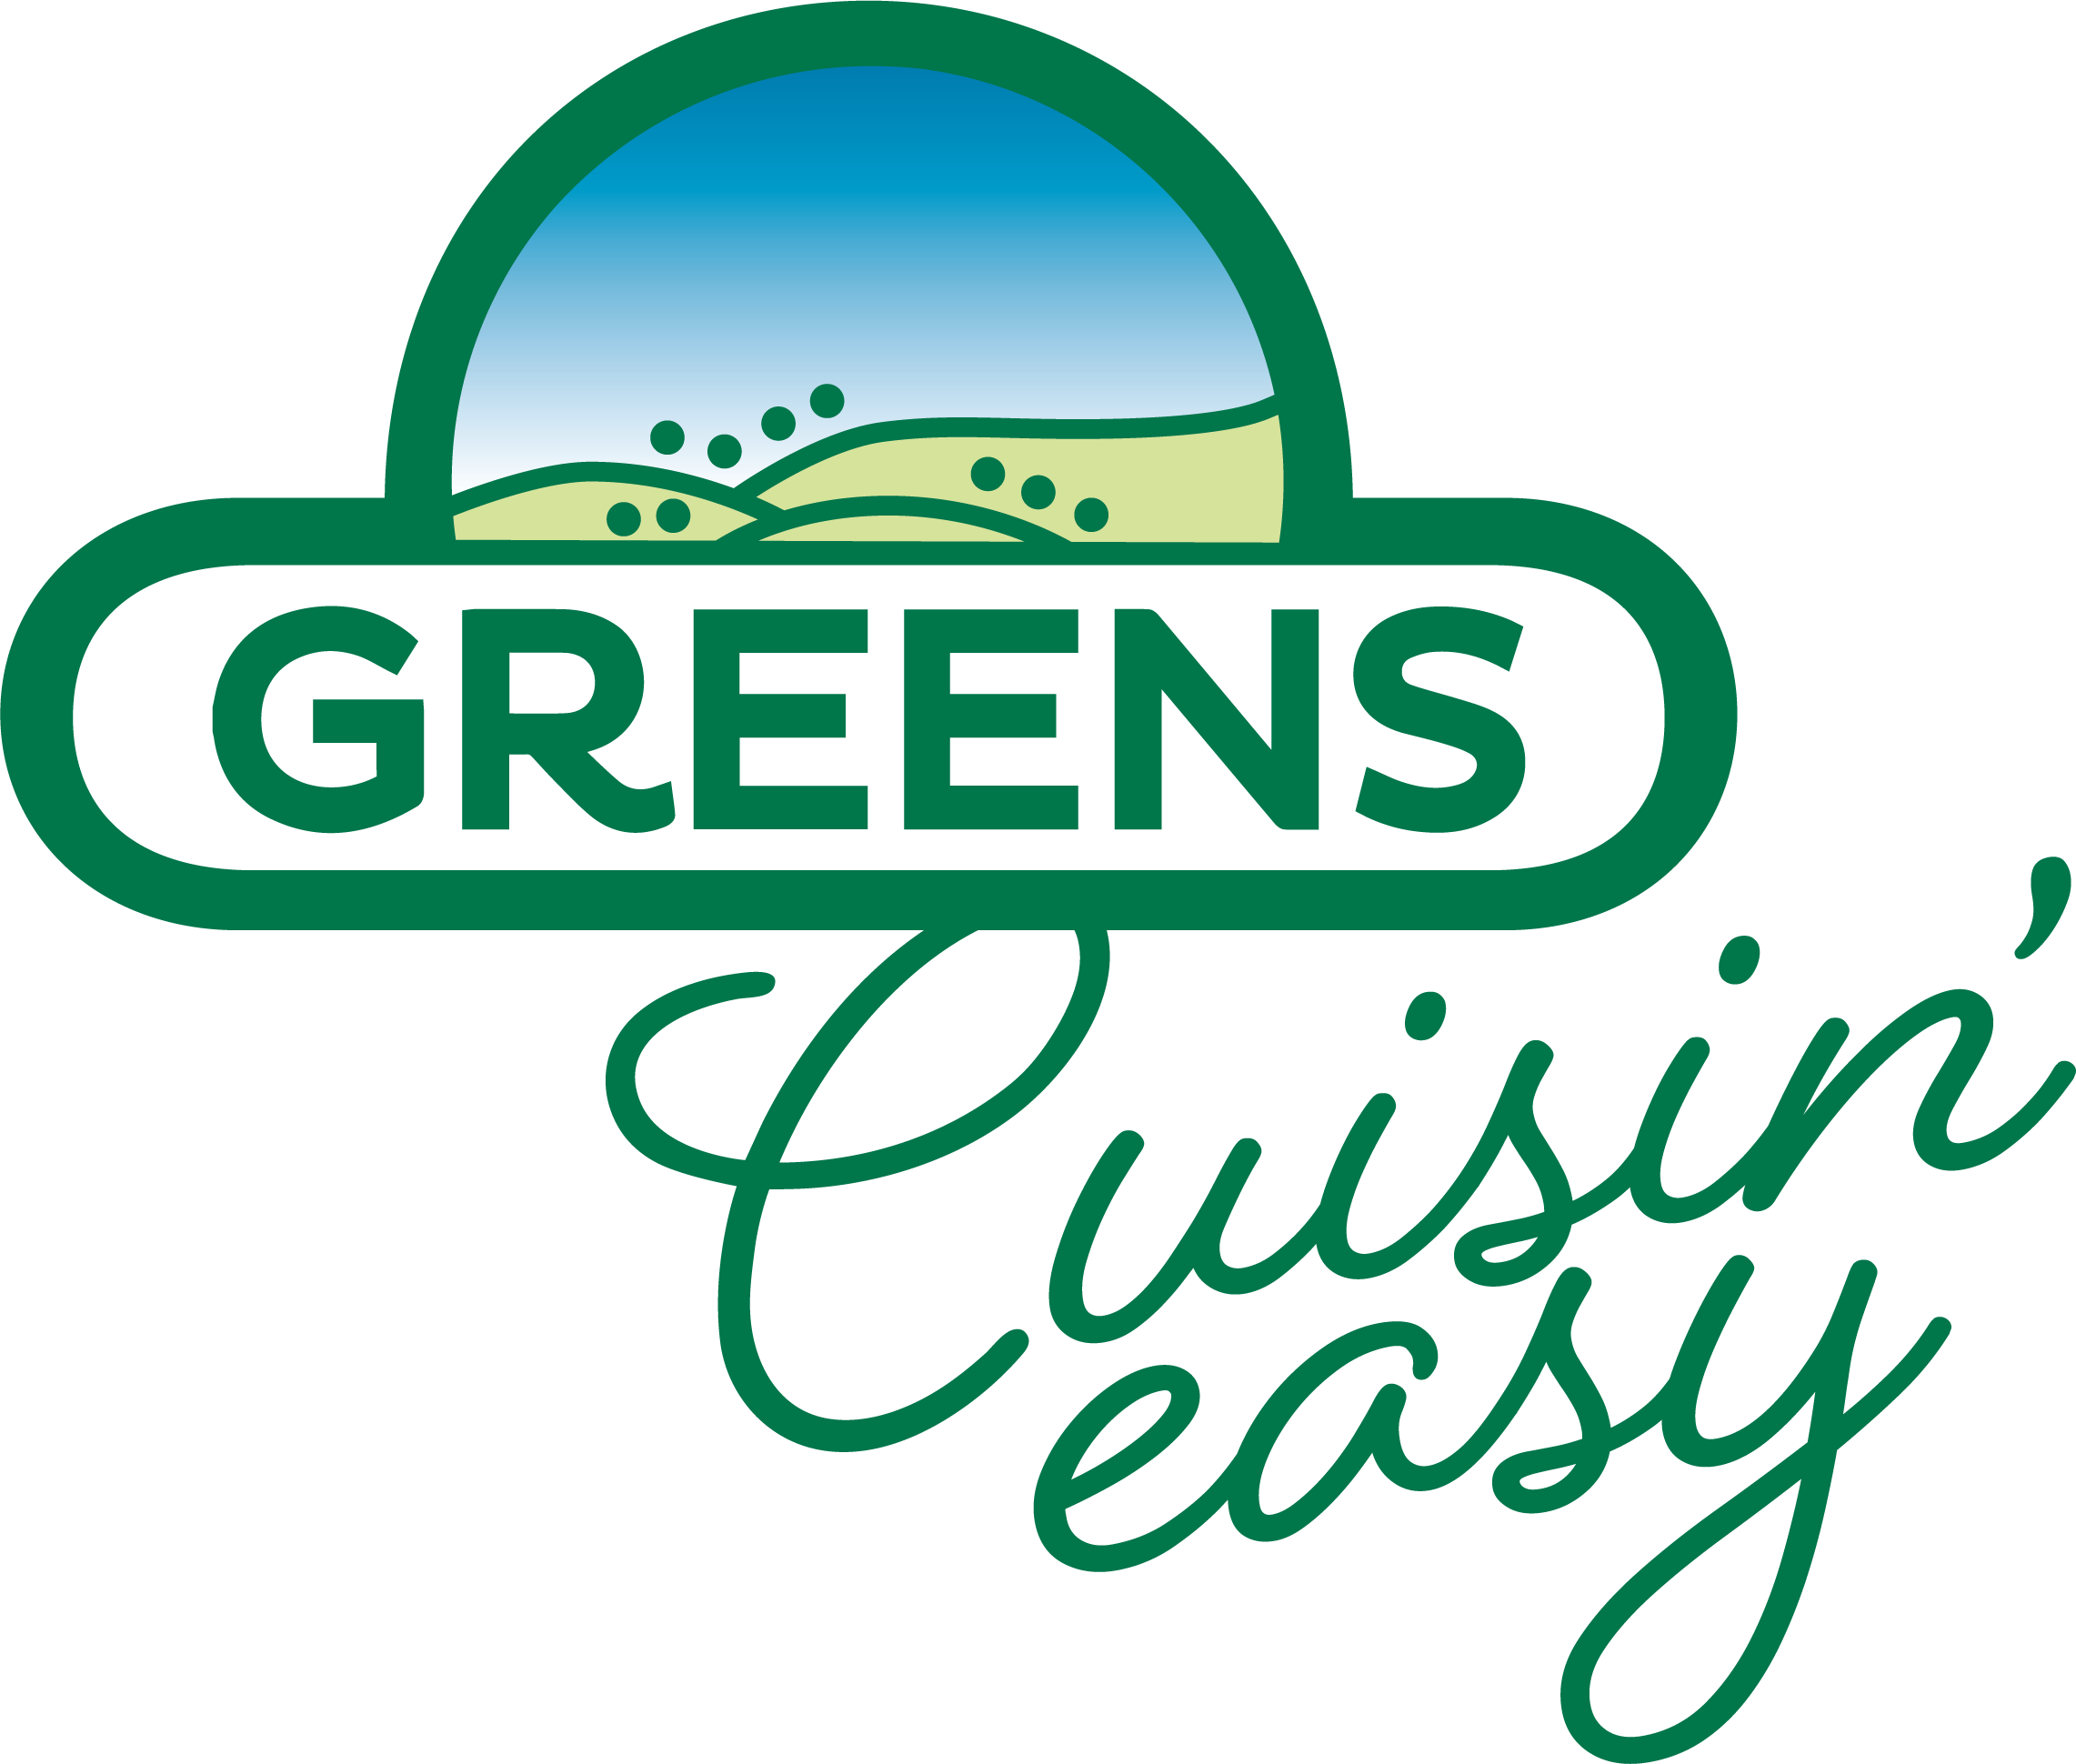 Cuisin'easy new logo